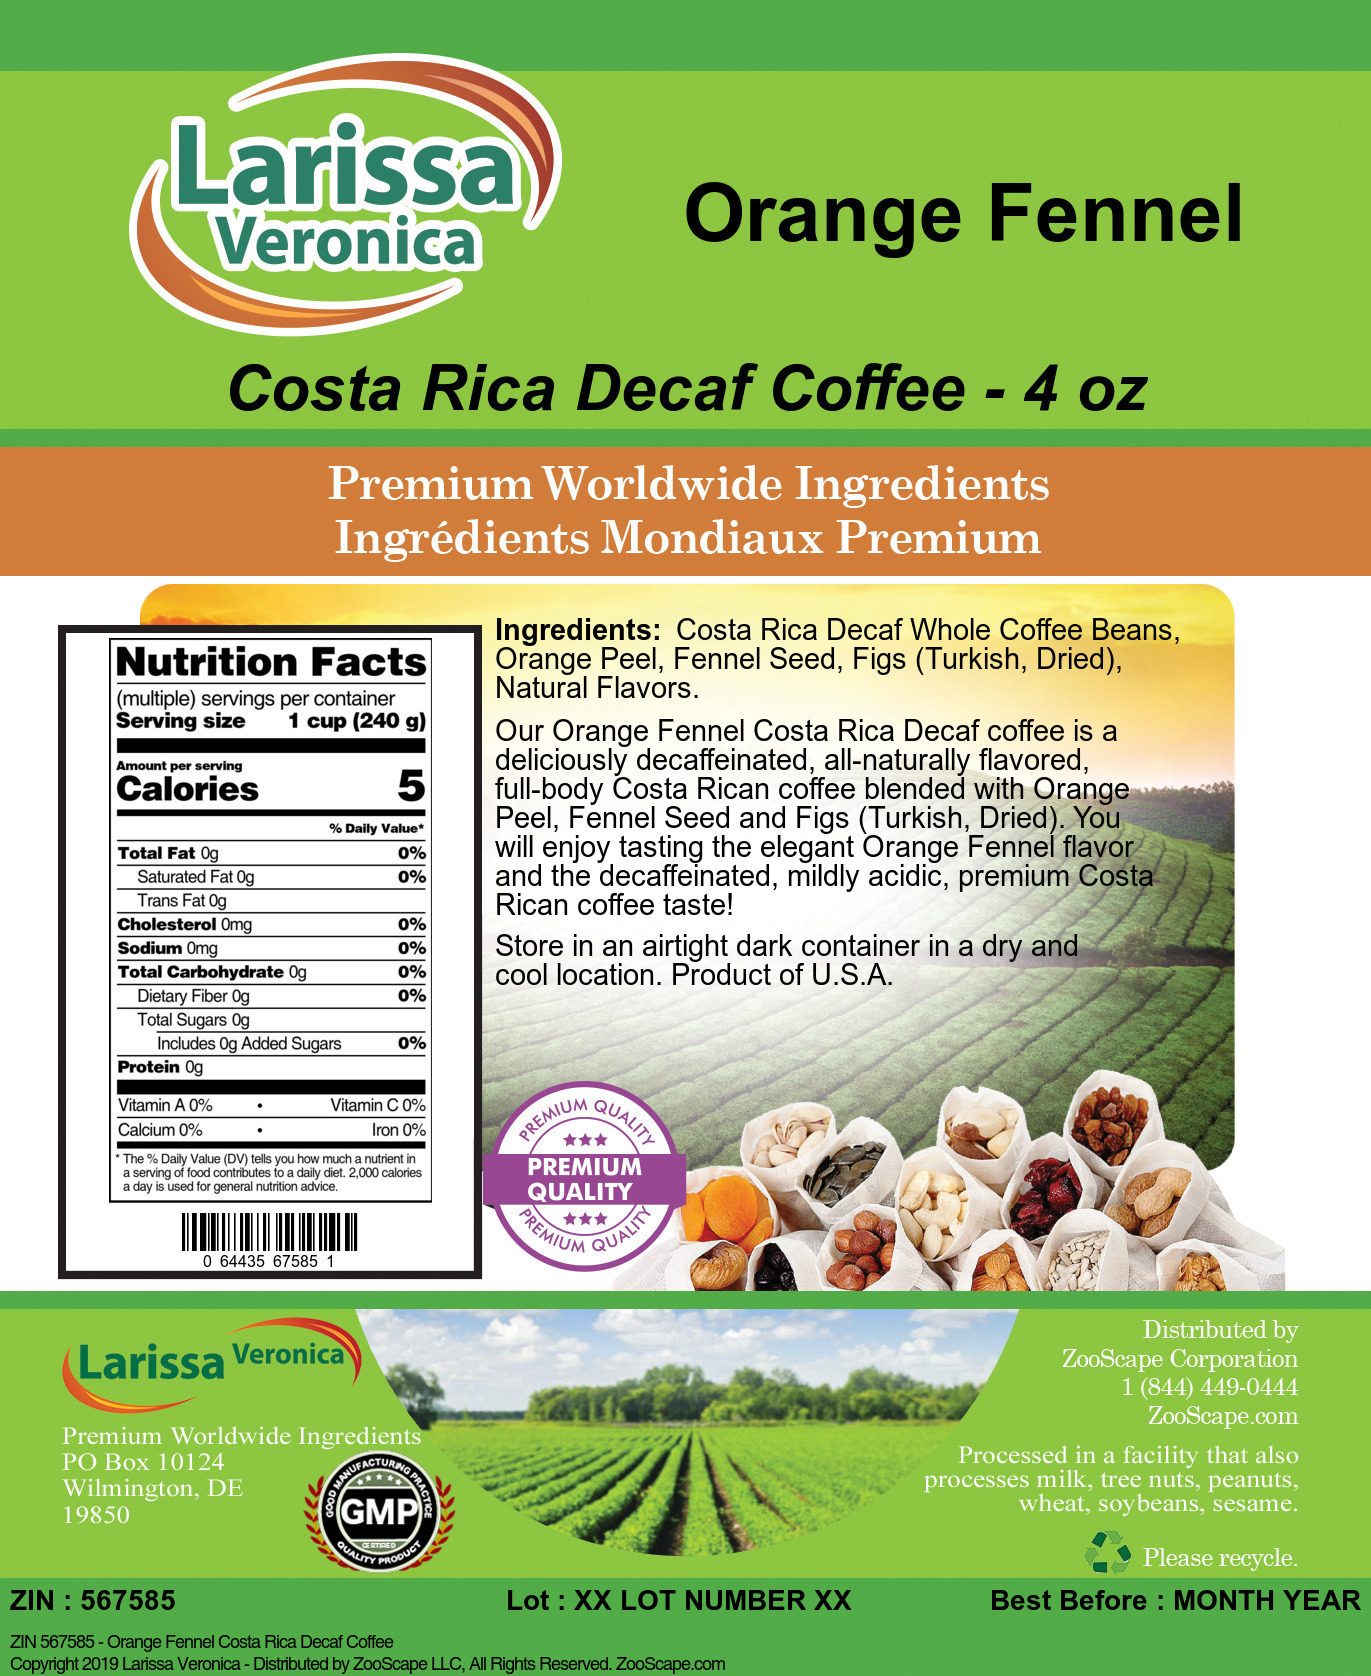 Orange Fennel Costa Rica Decaf Coffee - Label